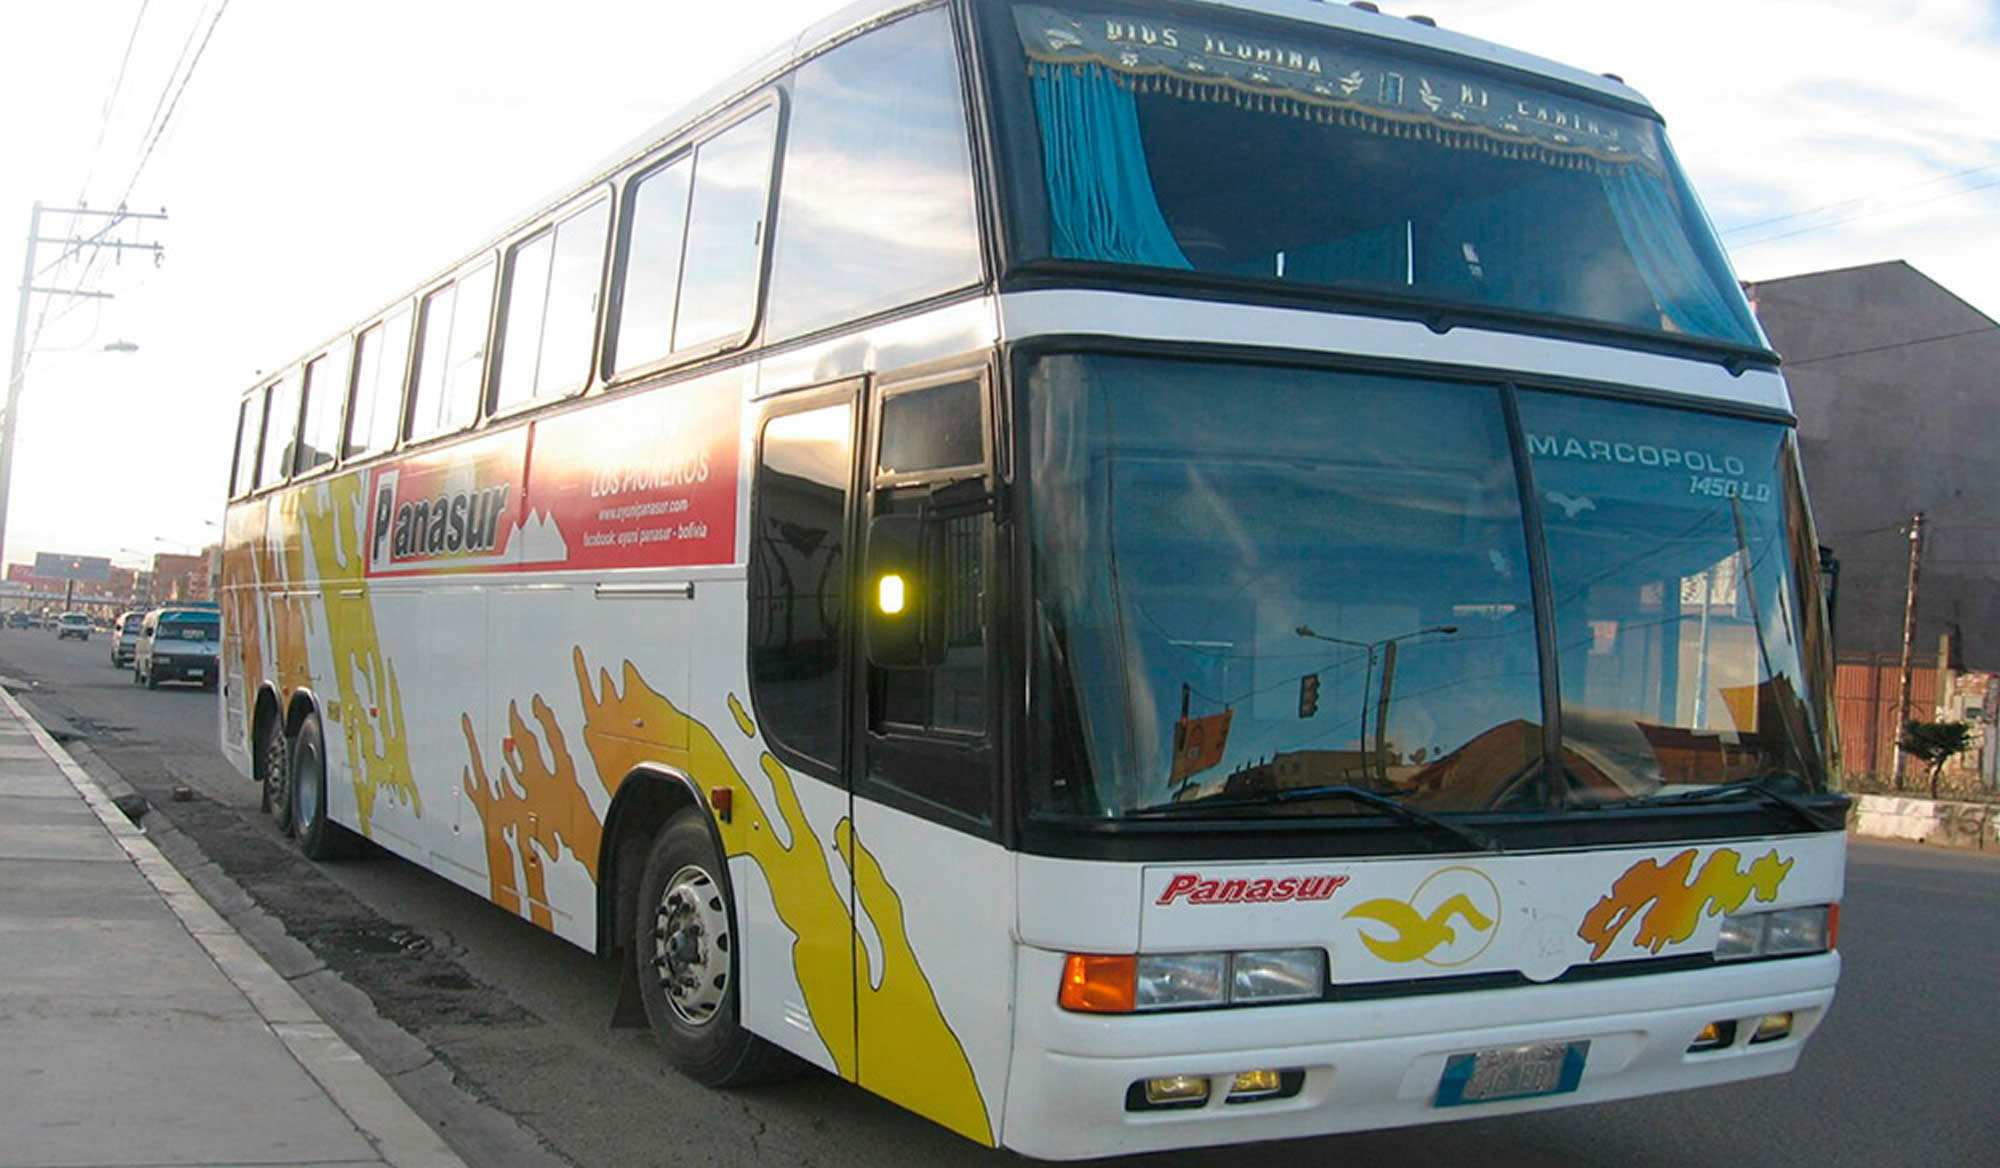 Panasur Bus La Paz - Uyuni